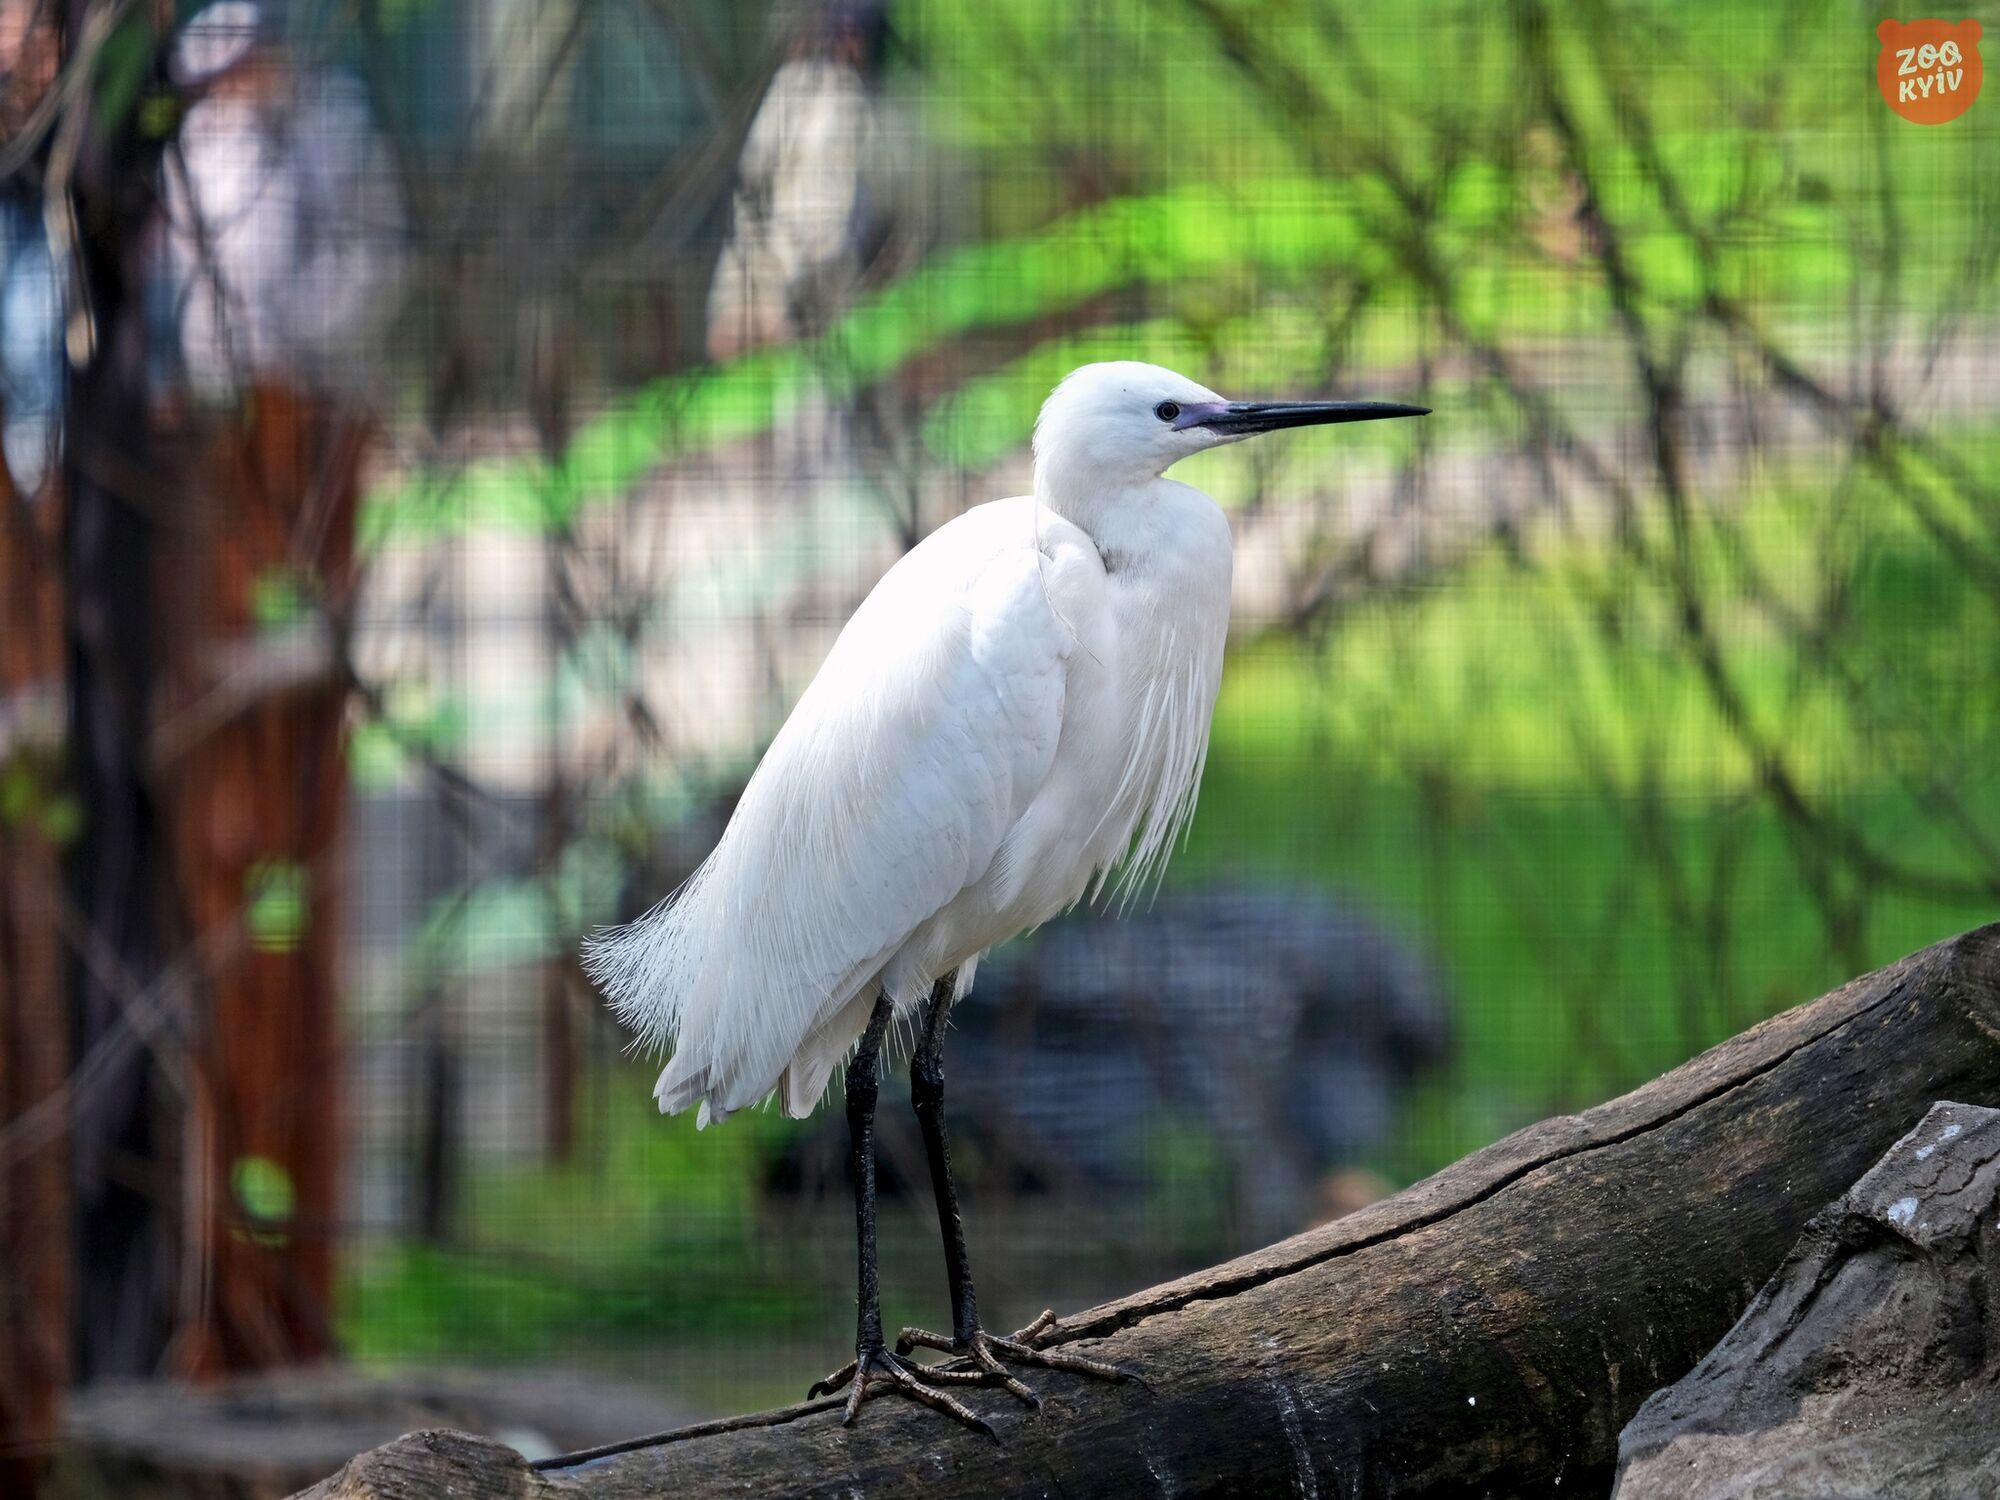 Відтворено натуральне середовище: у зоопарку Києва до нового літнього вольєру переїхали екзотичні птахи. Фото і відео